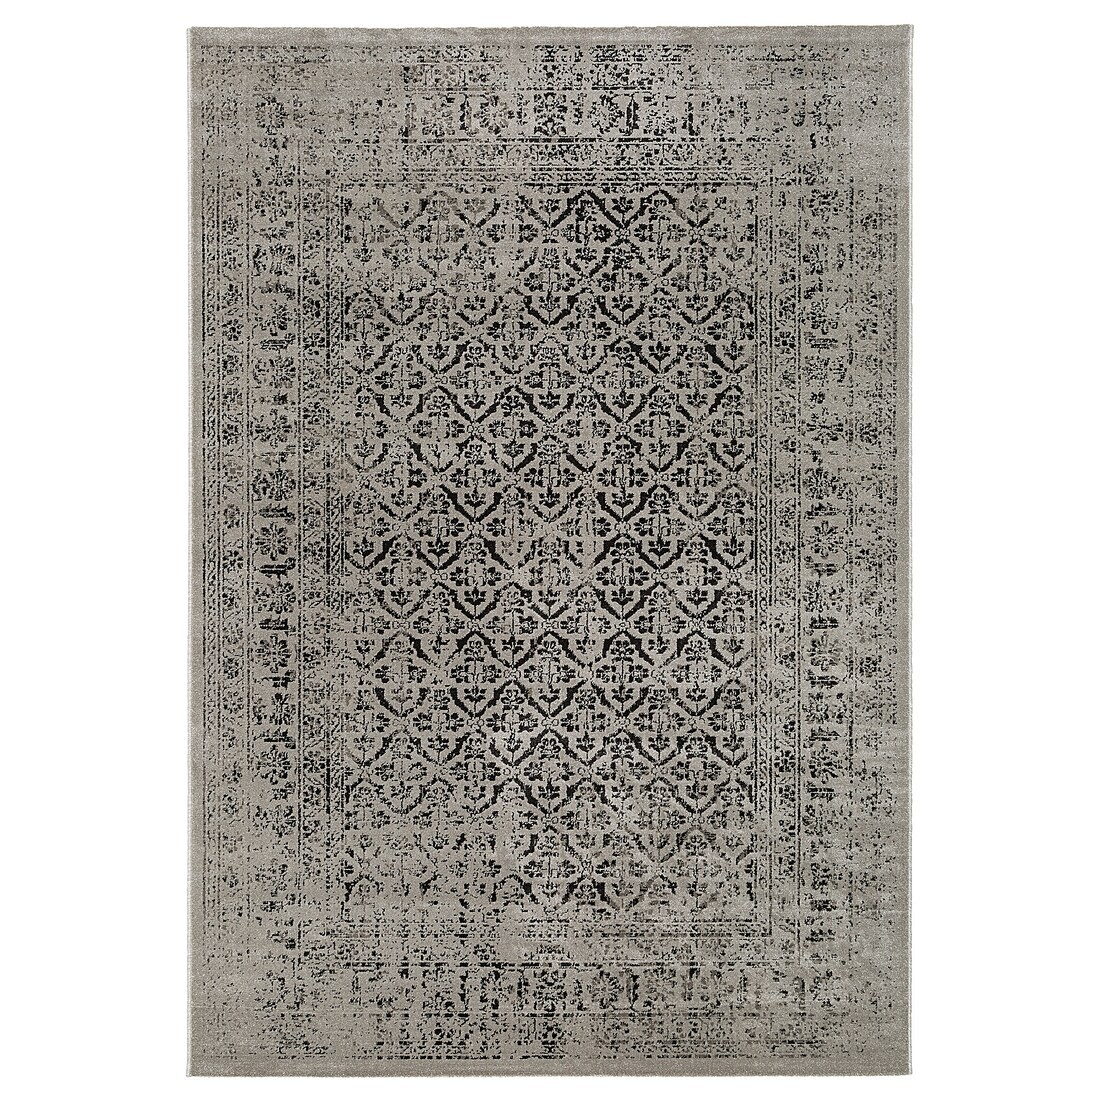 MANSTRUP Ковер с коротким ворсом, серый антик / цветочный узор, 160x230 см